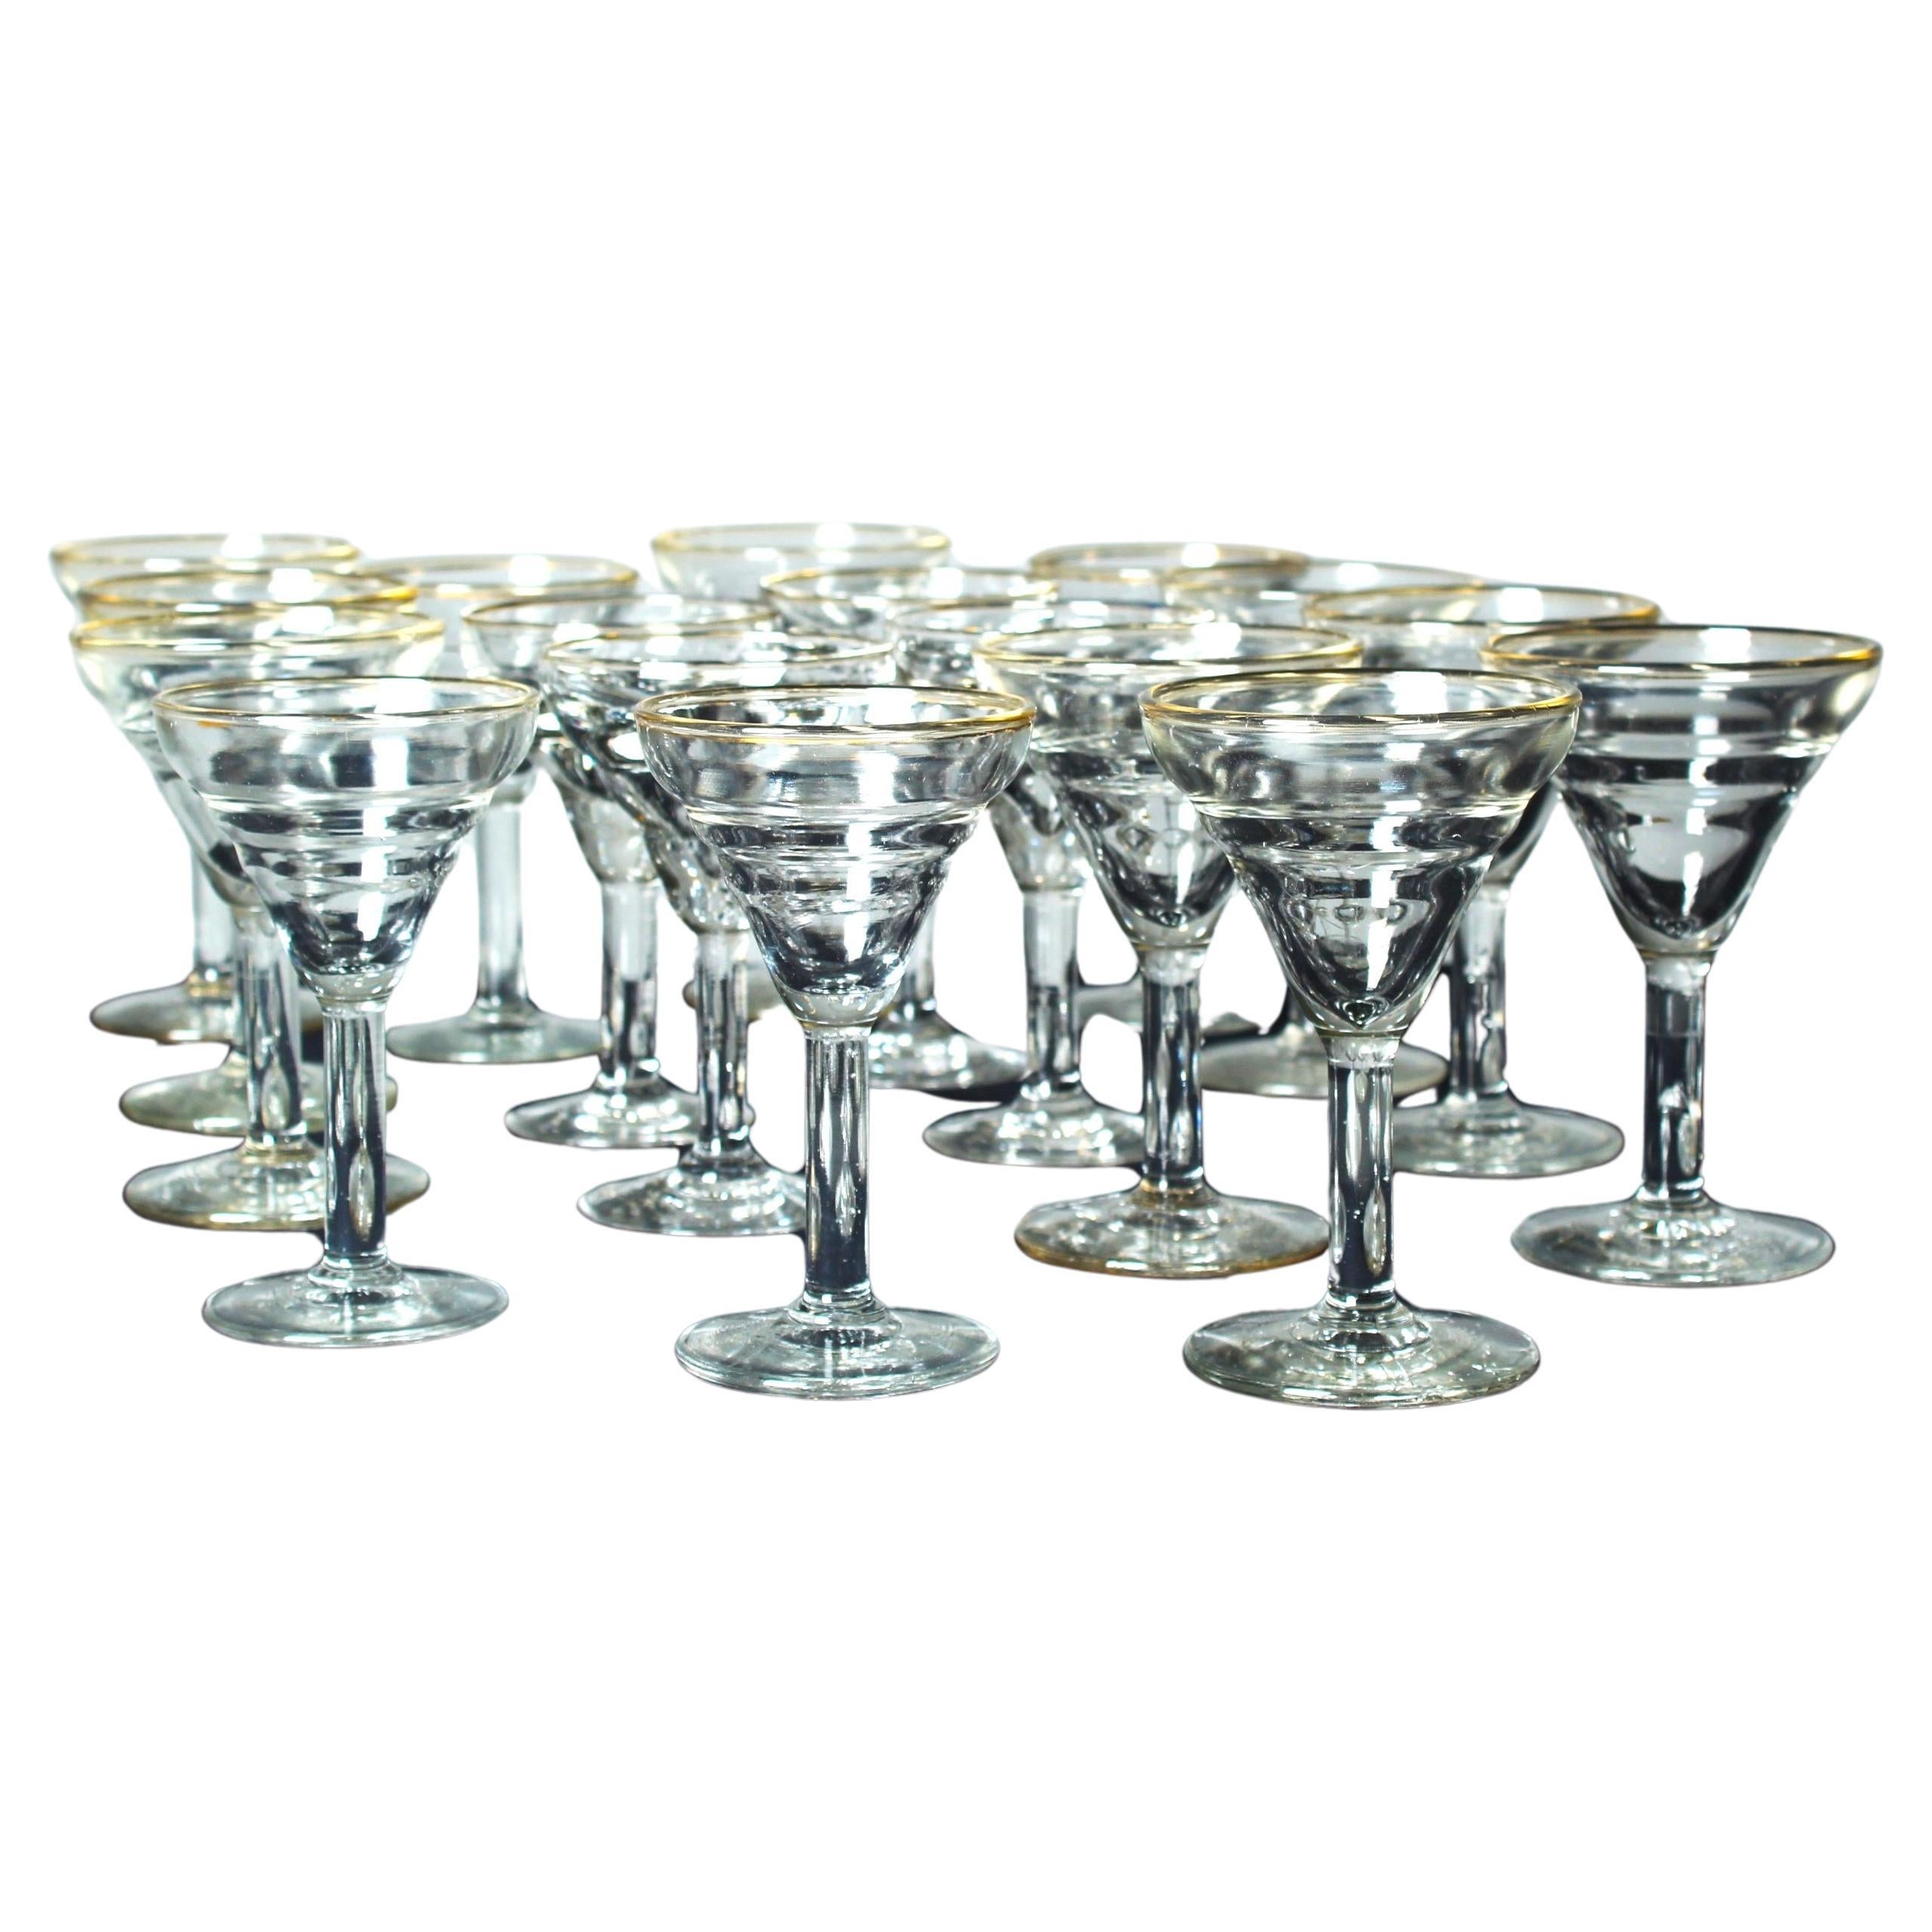 17 verres d'appérimentation Art Nouveau, années 1900, France, verre cristal avec décor doré